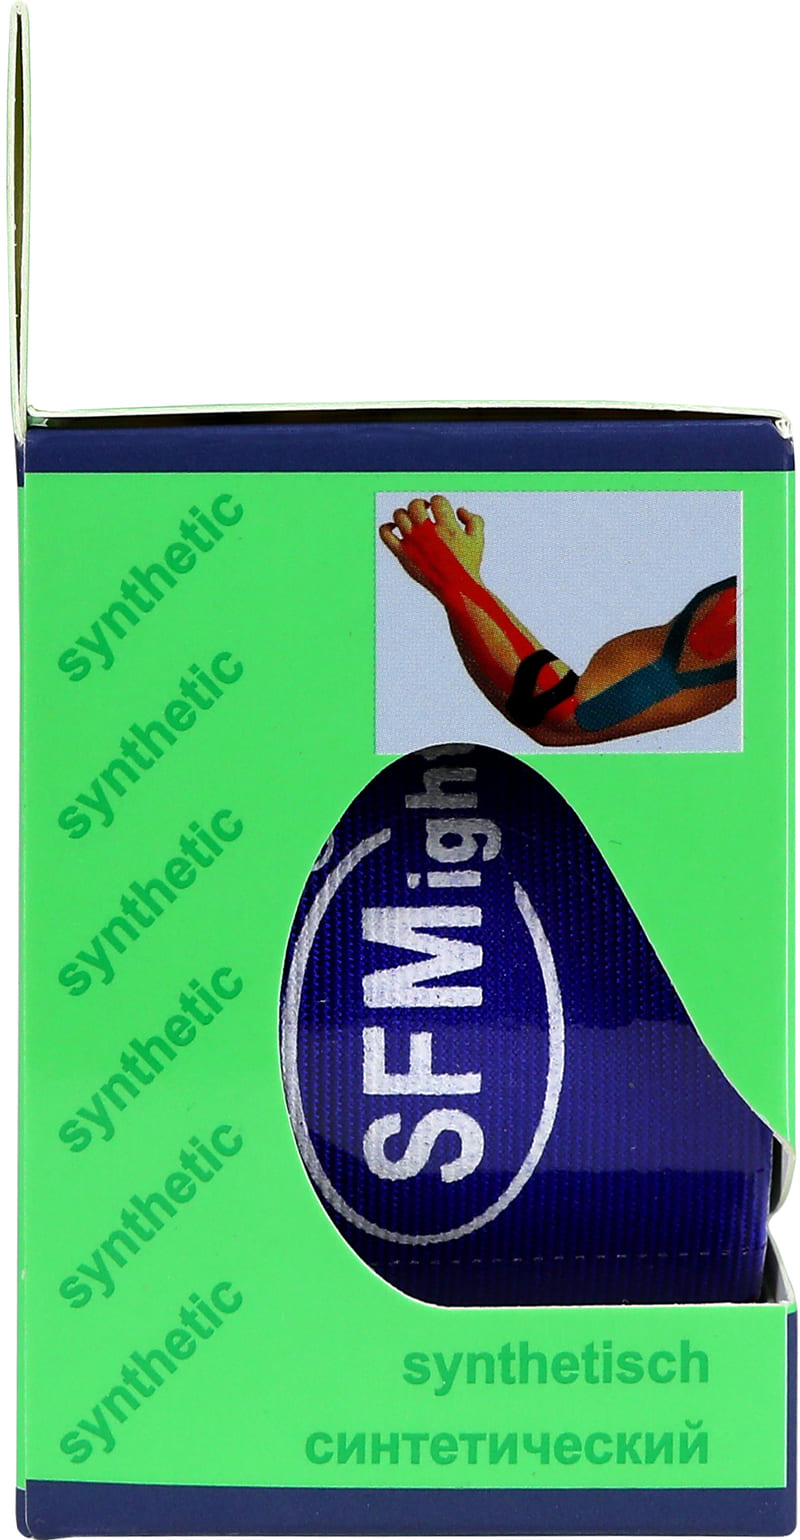 Лента кинезиологическая SFM-Plaster, на полимерной основе (нейлон), 5см Х 500см,    синего цвета, в диспенсере, с логотипом